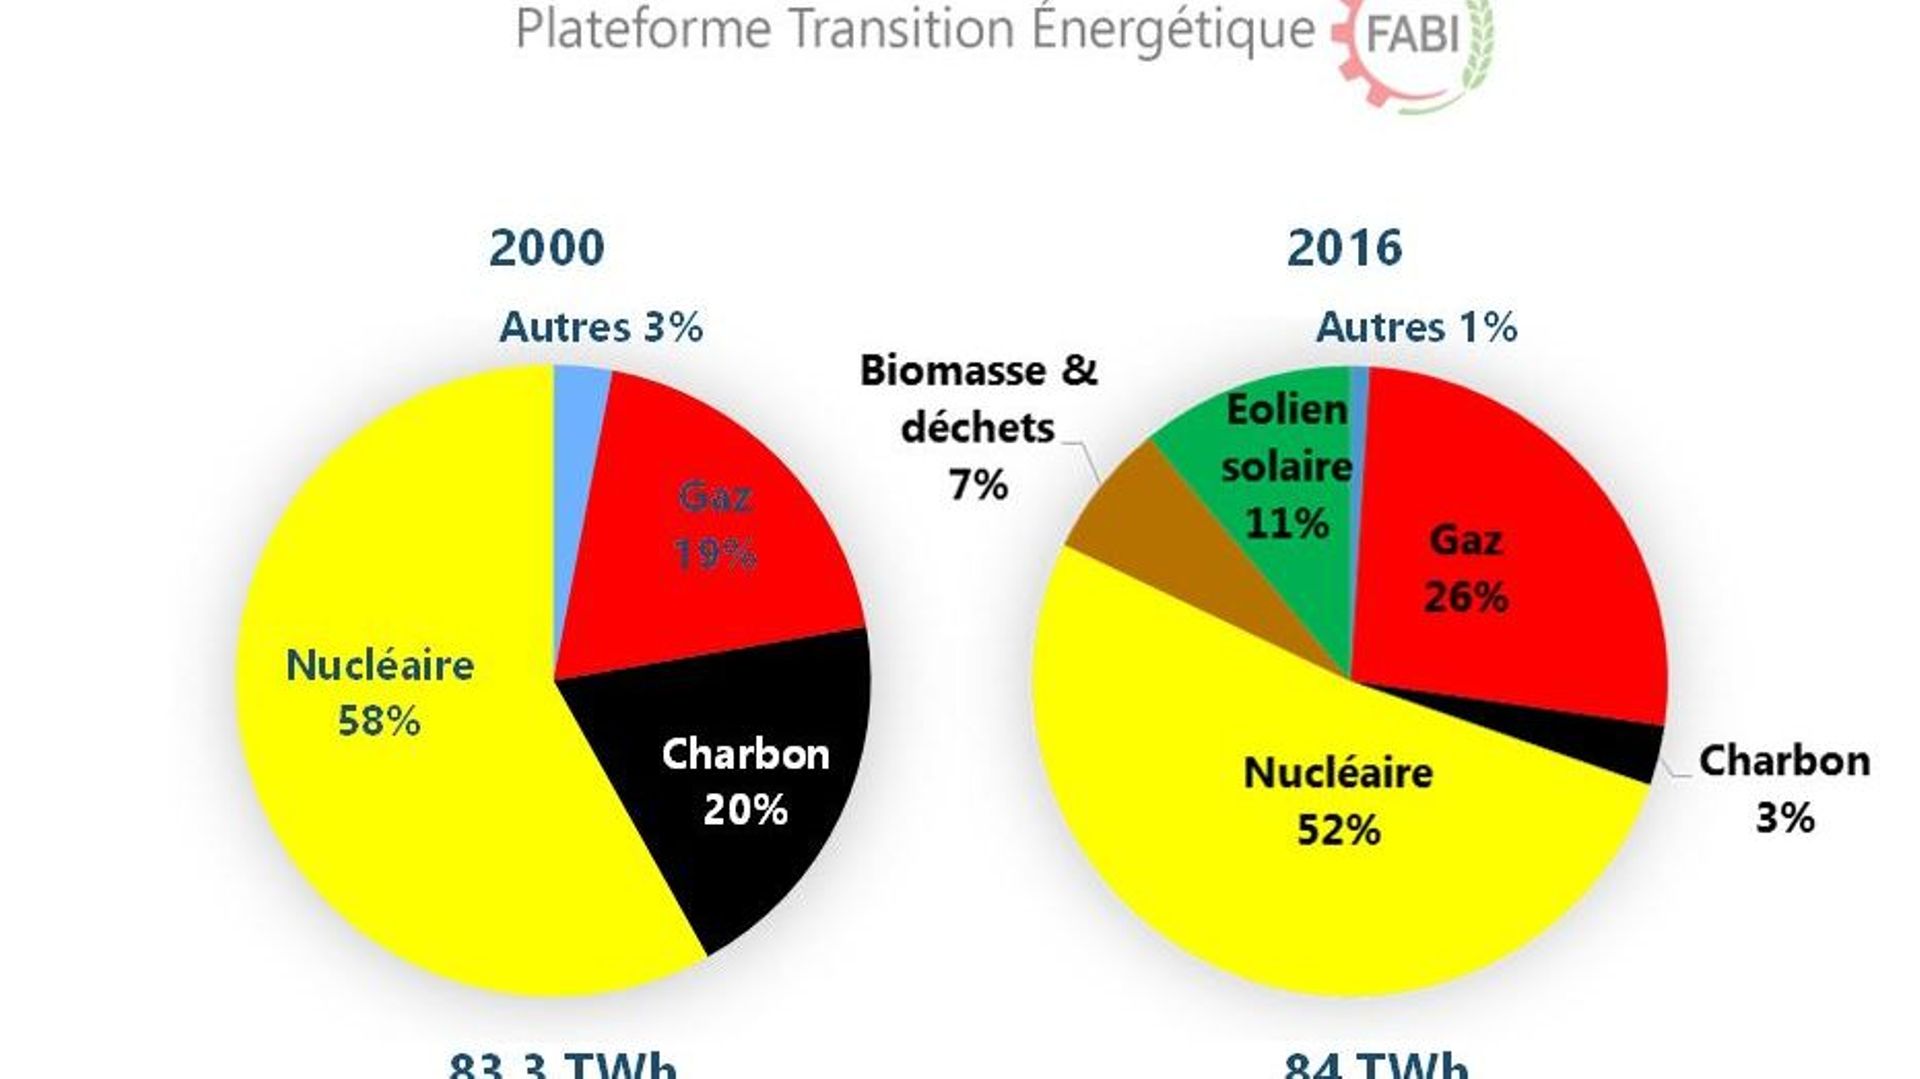 Production électrique par sources 2000 et 2016 / Source des données : STATBEL
